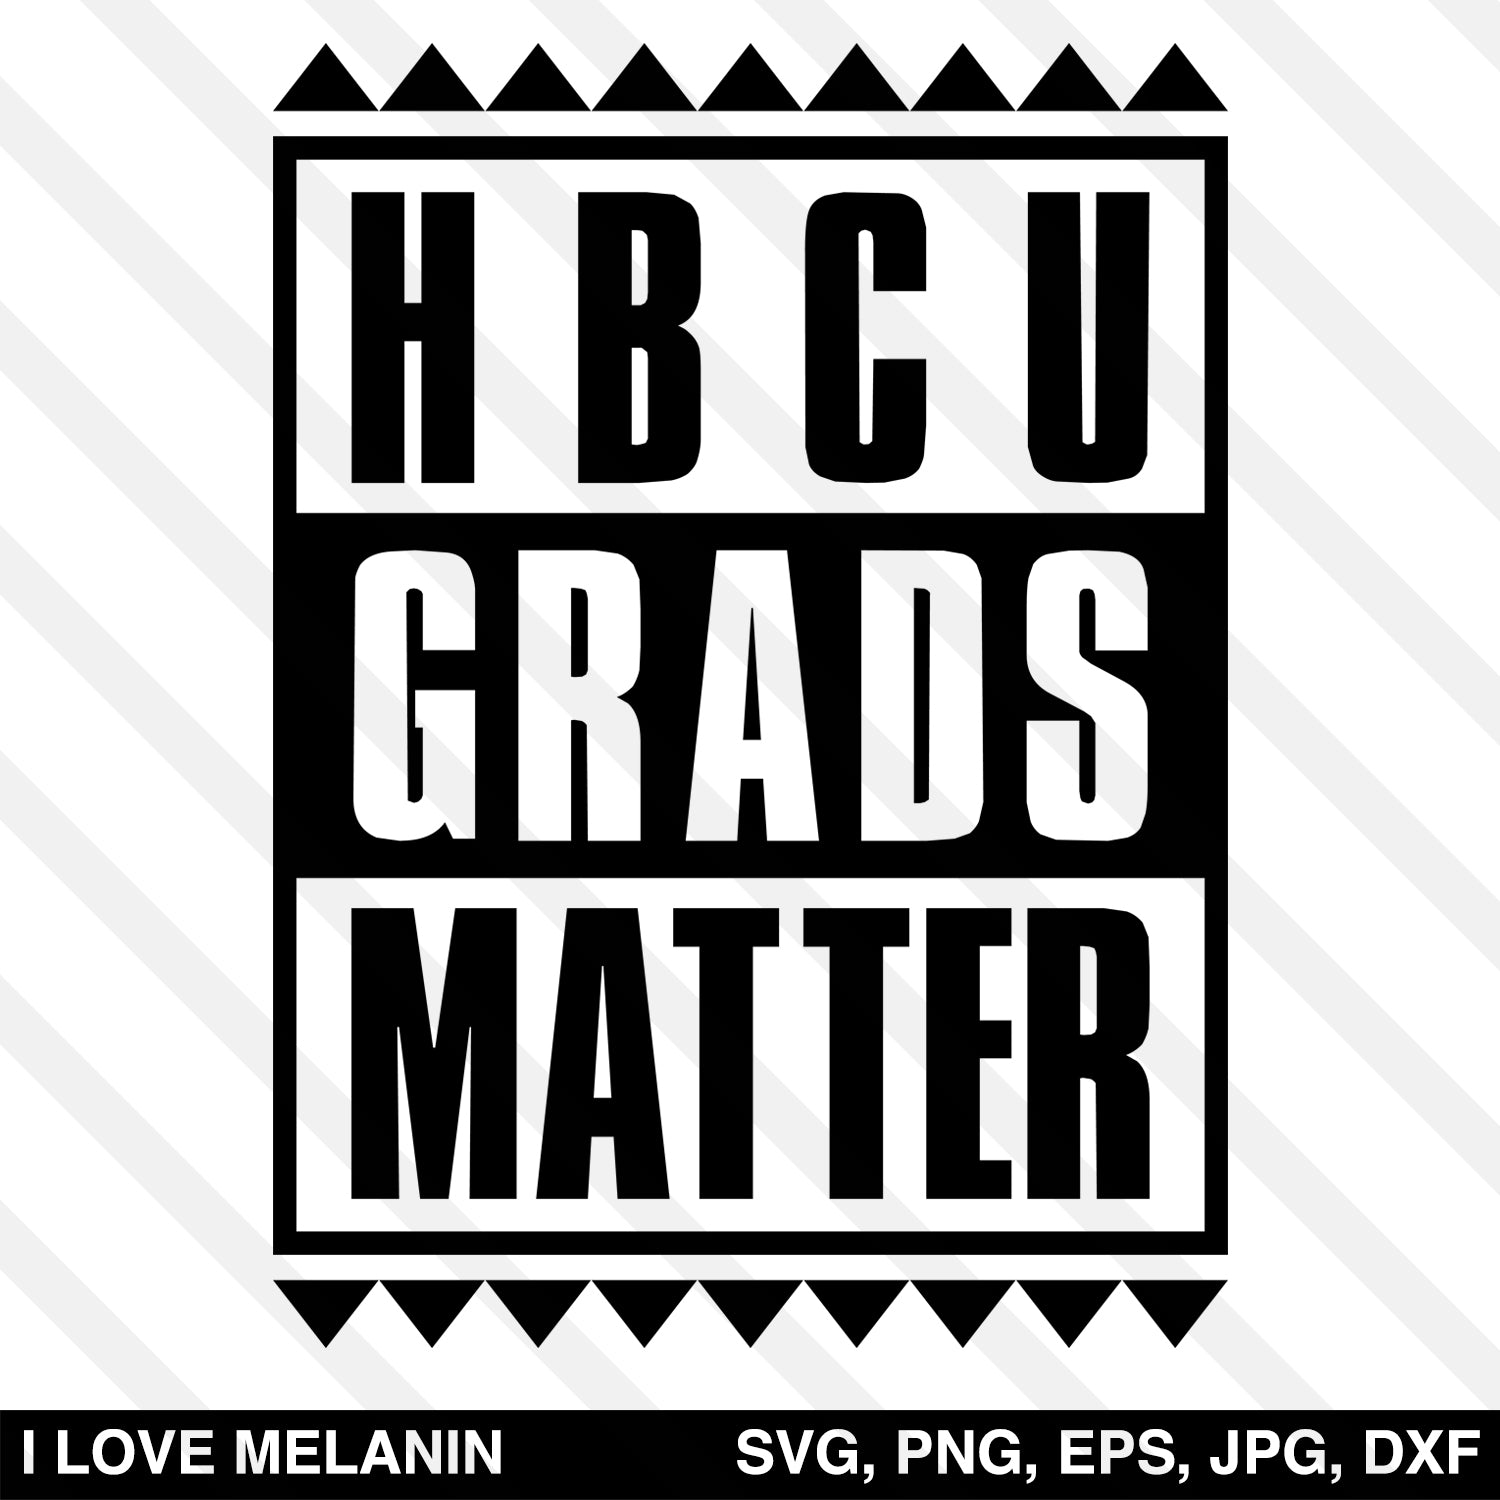 HBCU Grads Matter SVG